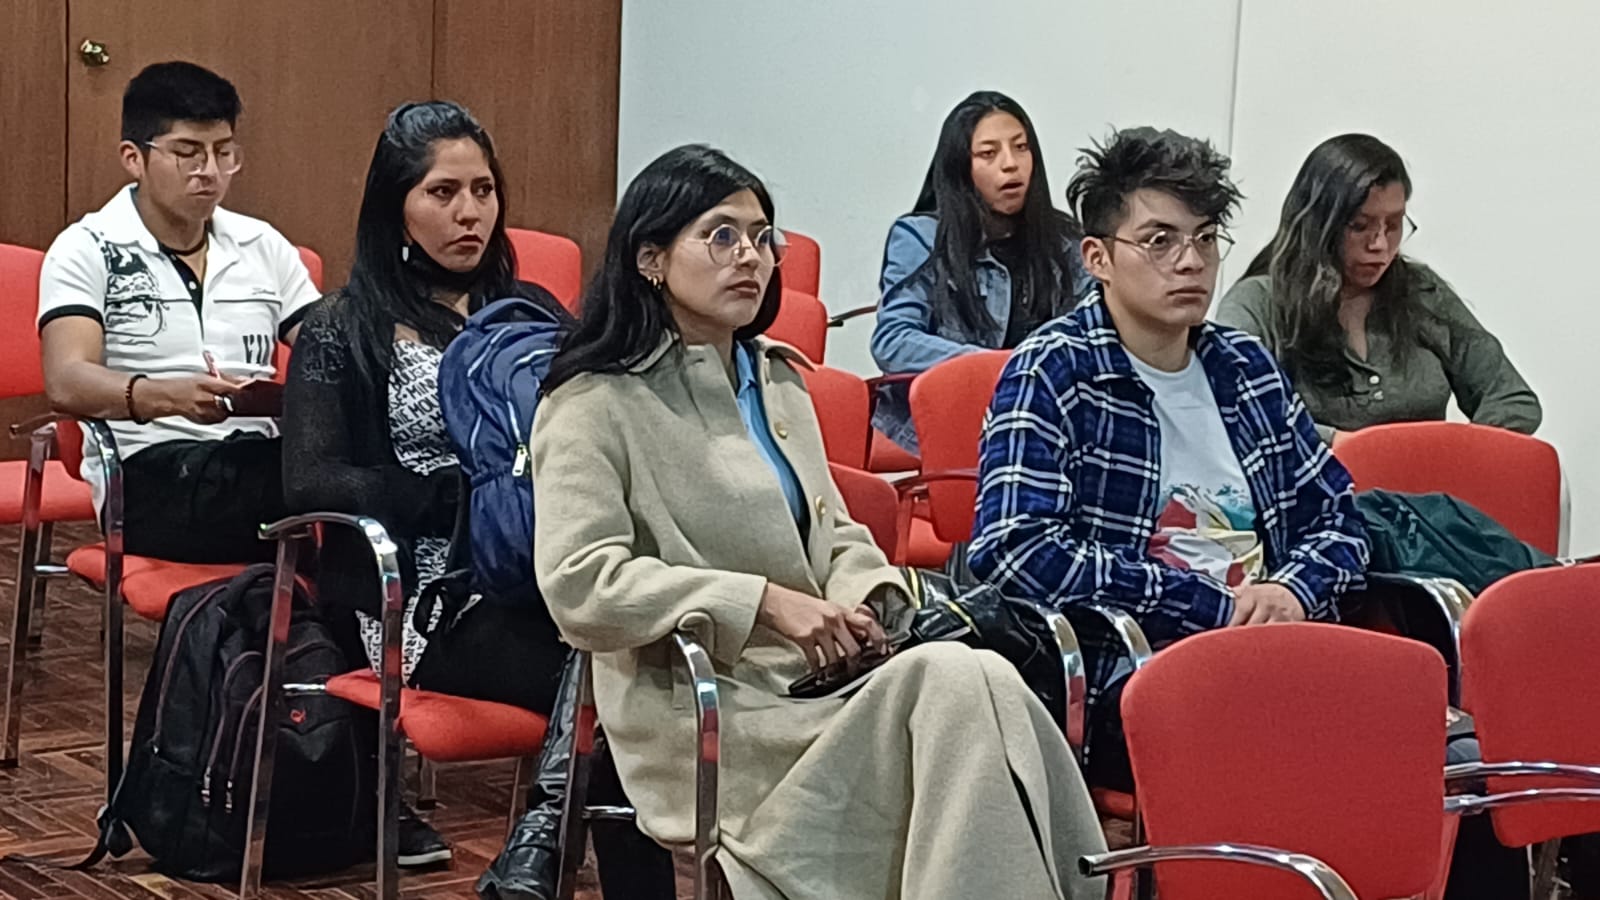 Delegación Defensorial Departamental La Paz desarrolló el taller “Convivencia Pacífica” con estudiantes universitarios de la ciudad de La Paz